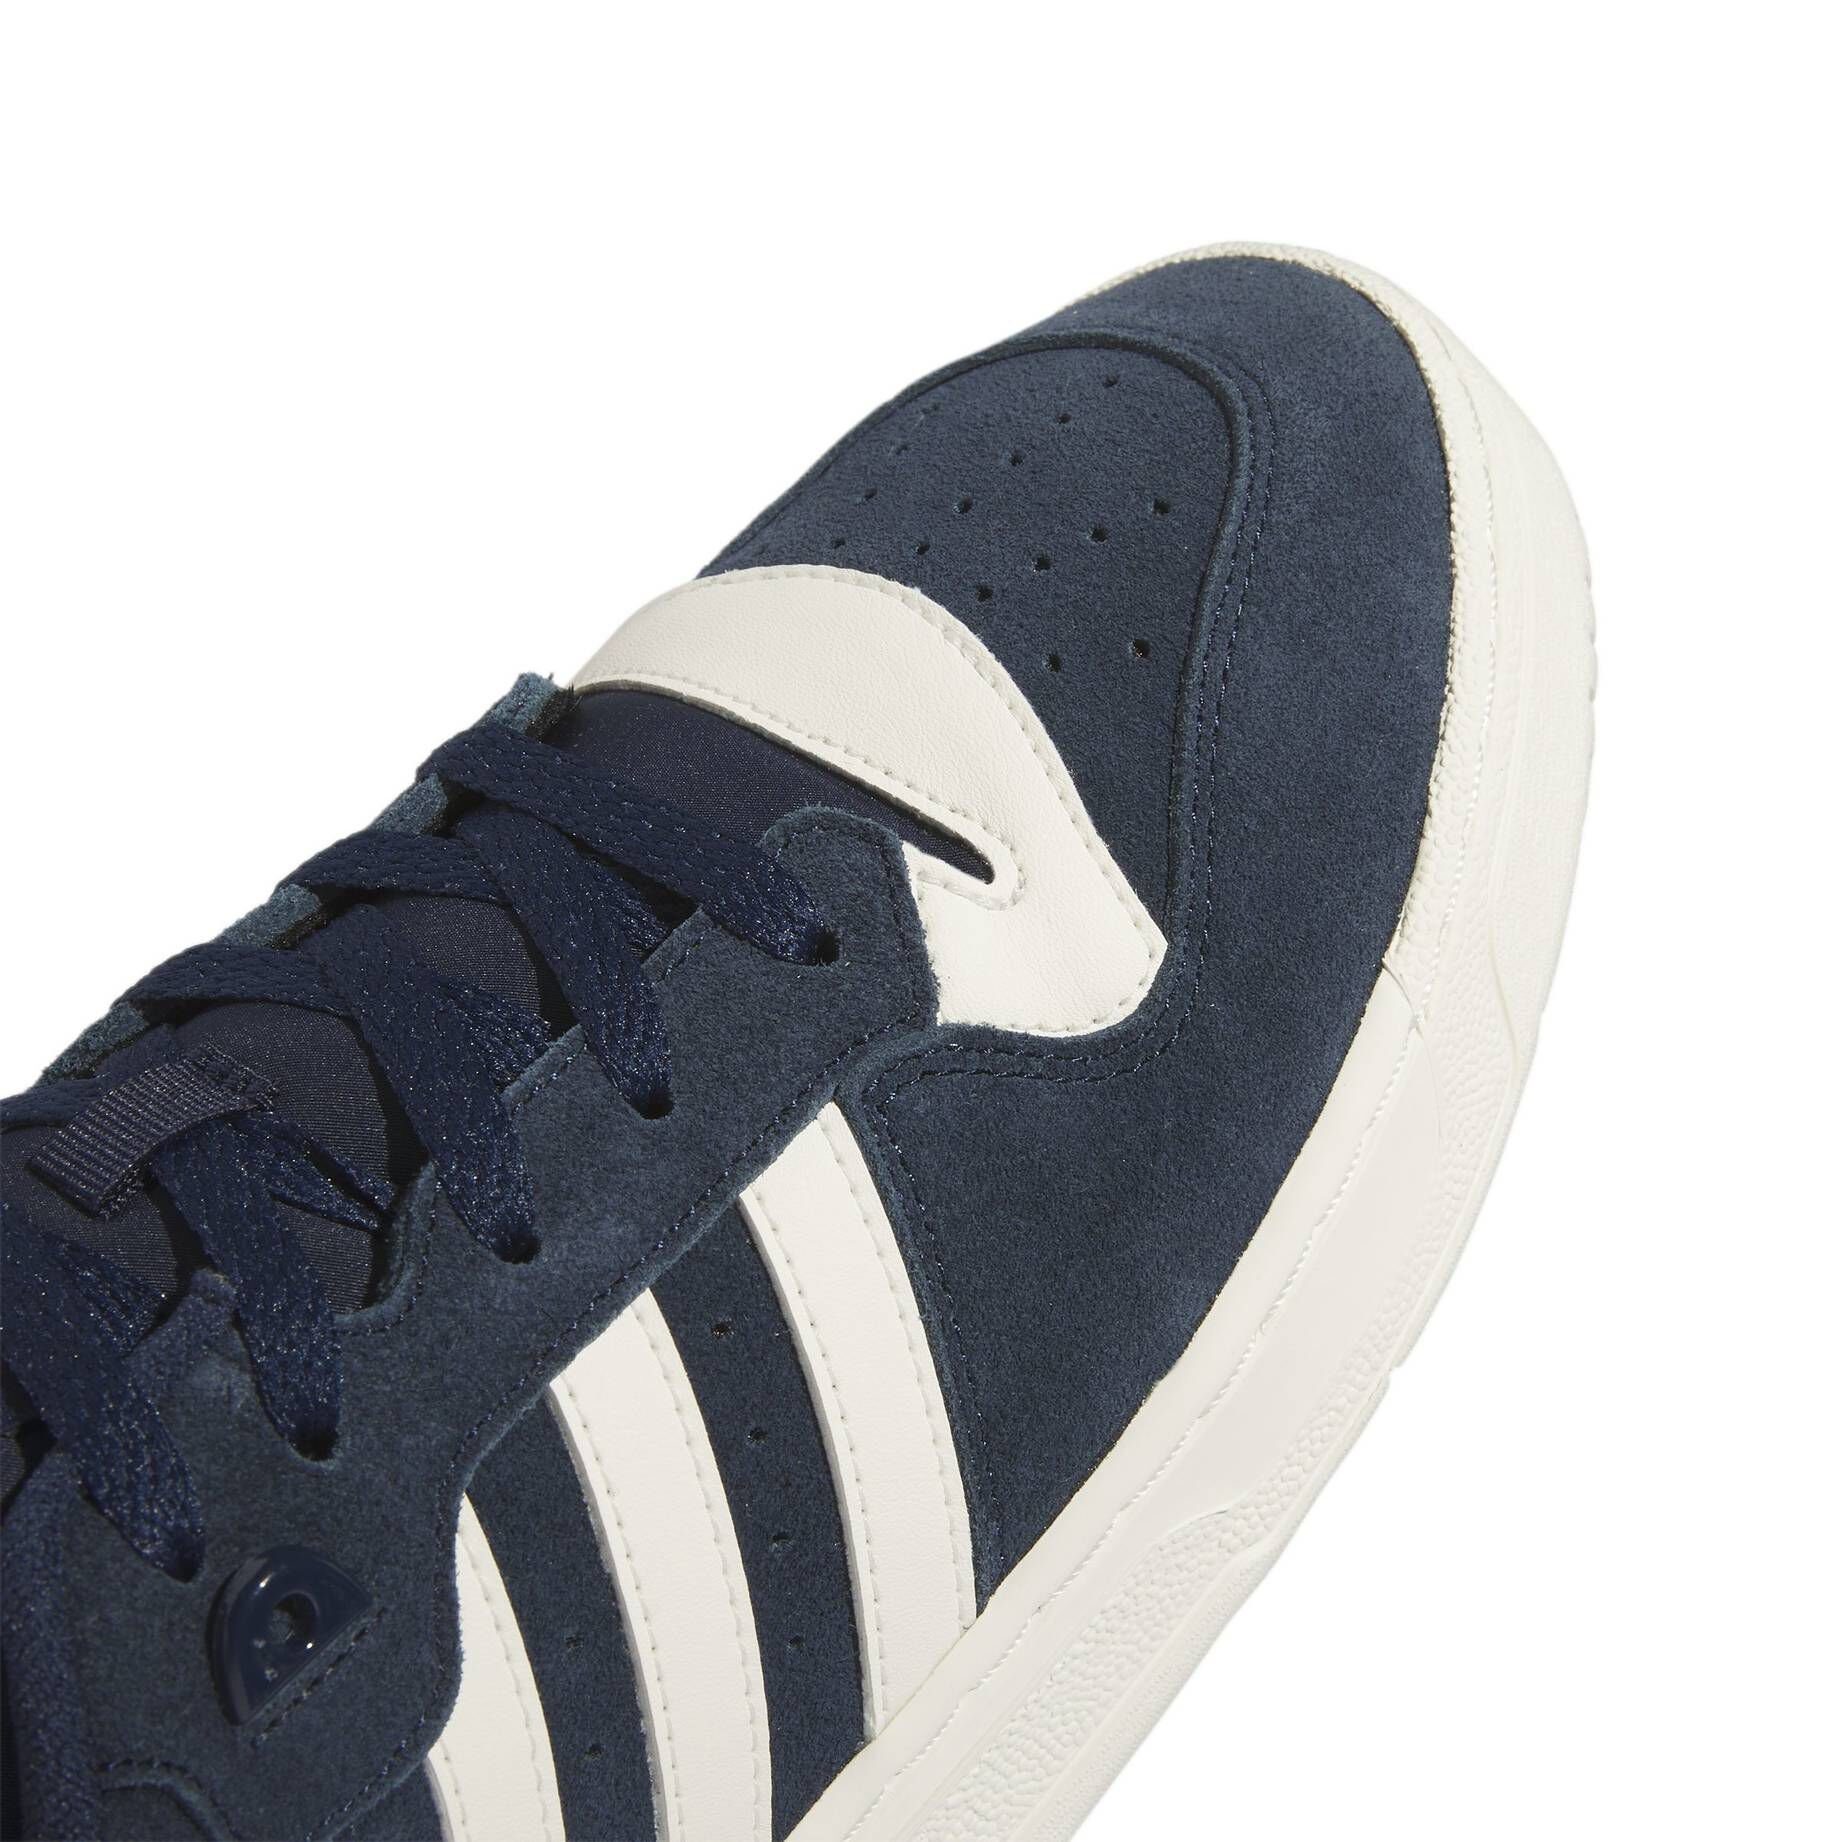 Halbschuhe Originals RIVALRY adidas Herren Sneaker